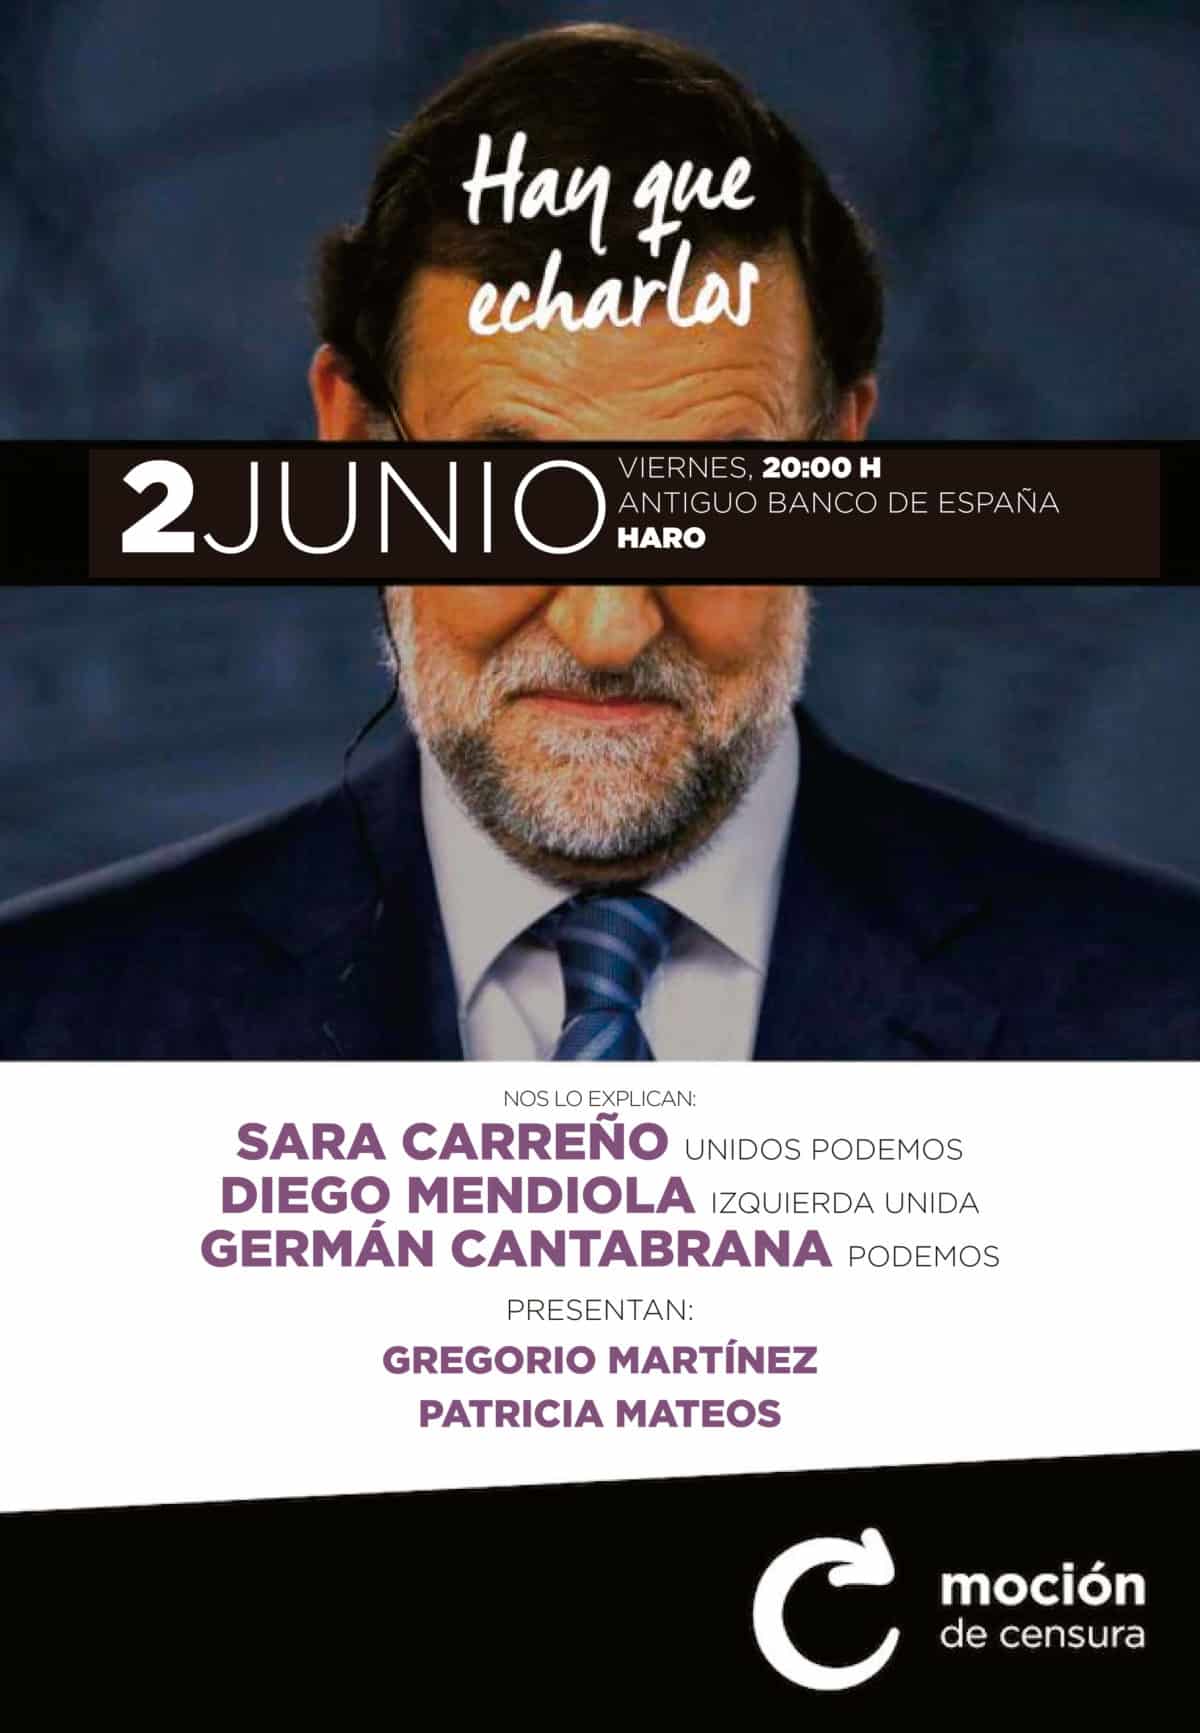 La moción de censura contra Rajoy se explicará este viernes en Haro 1